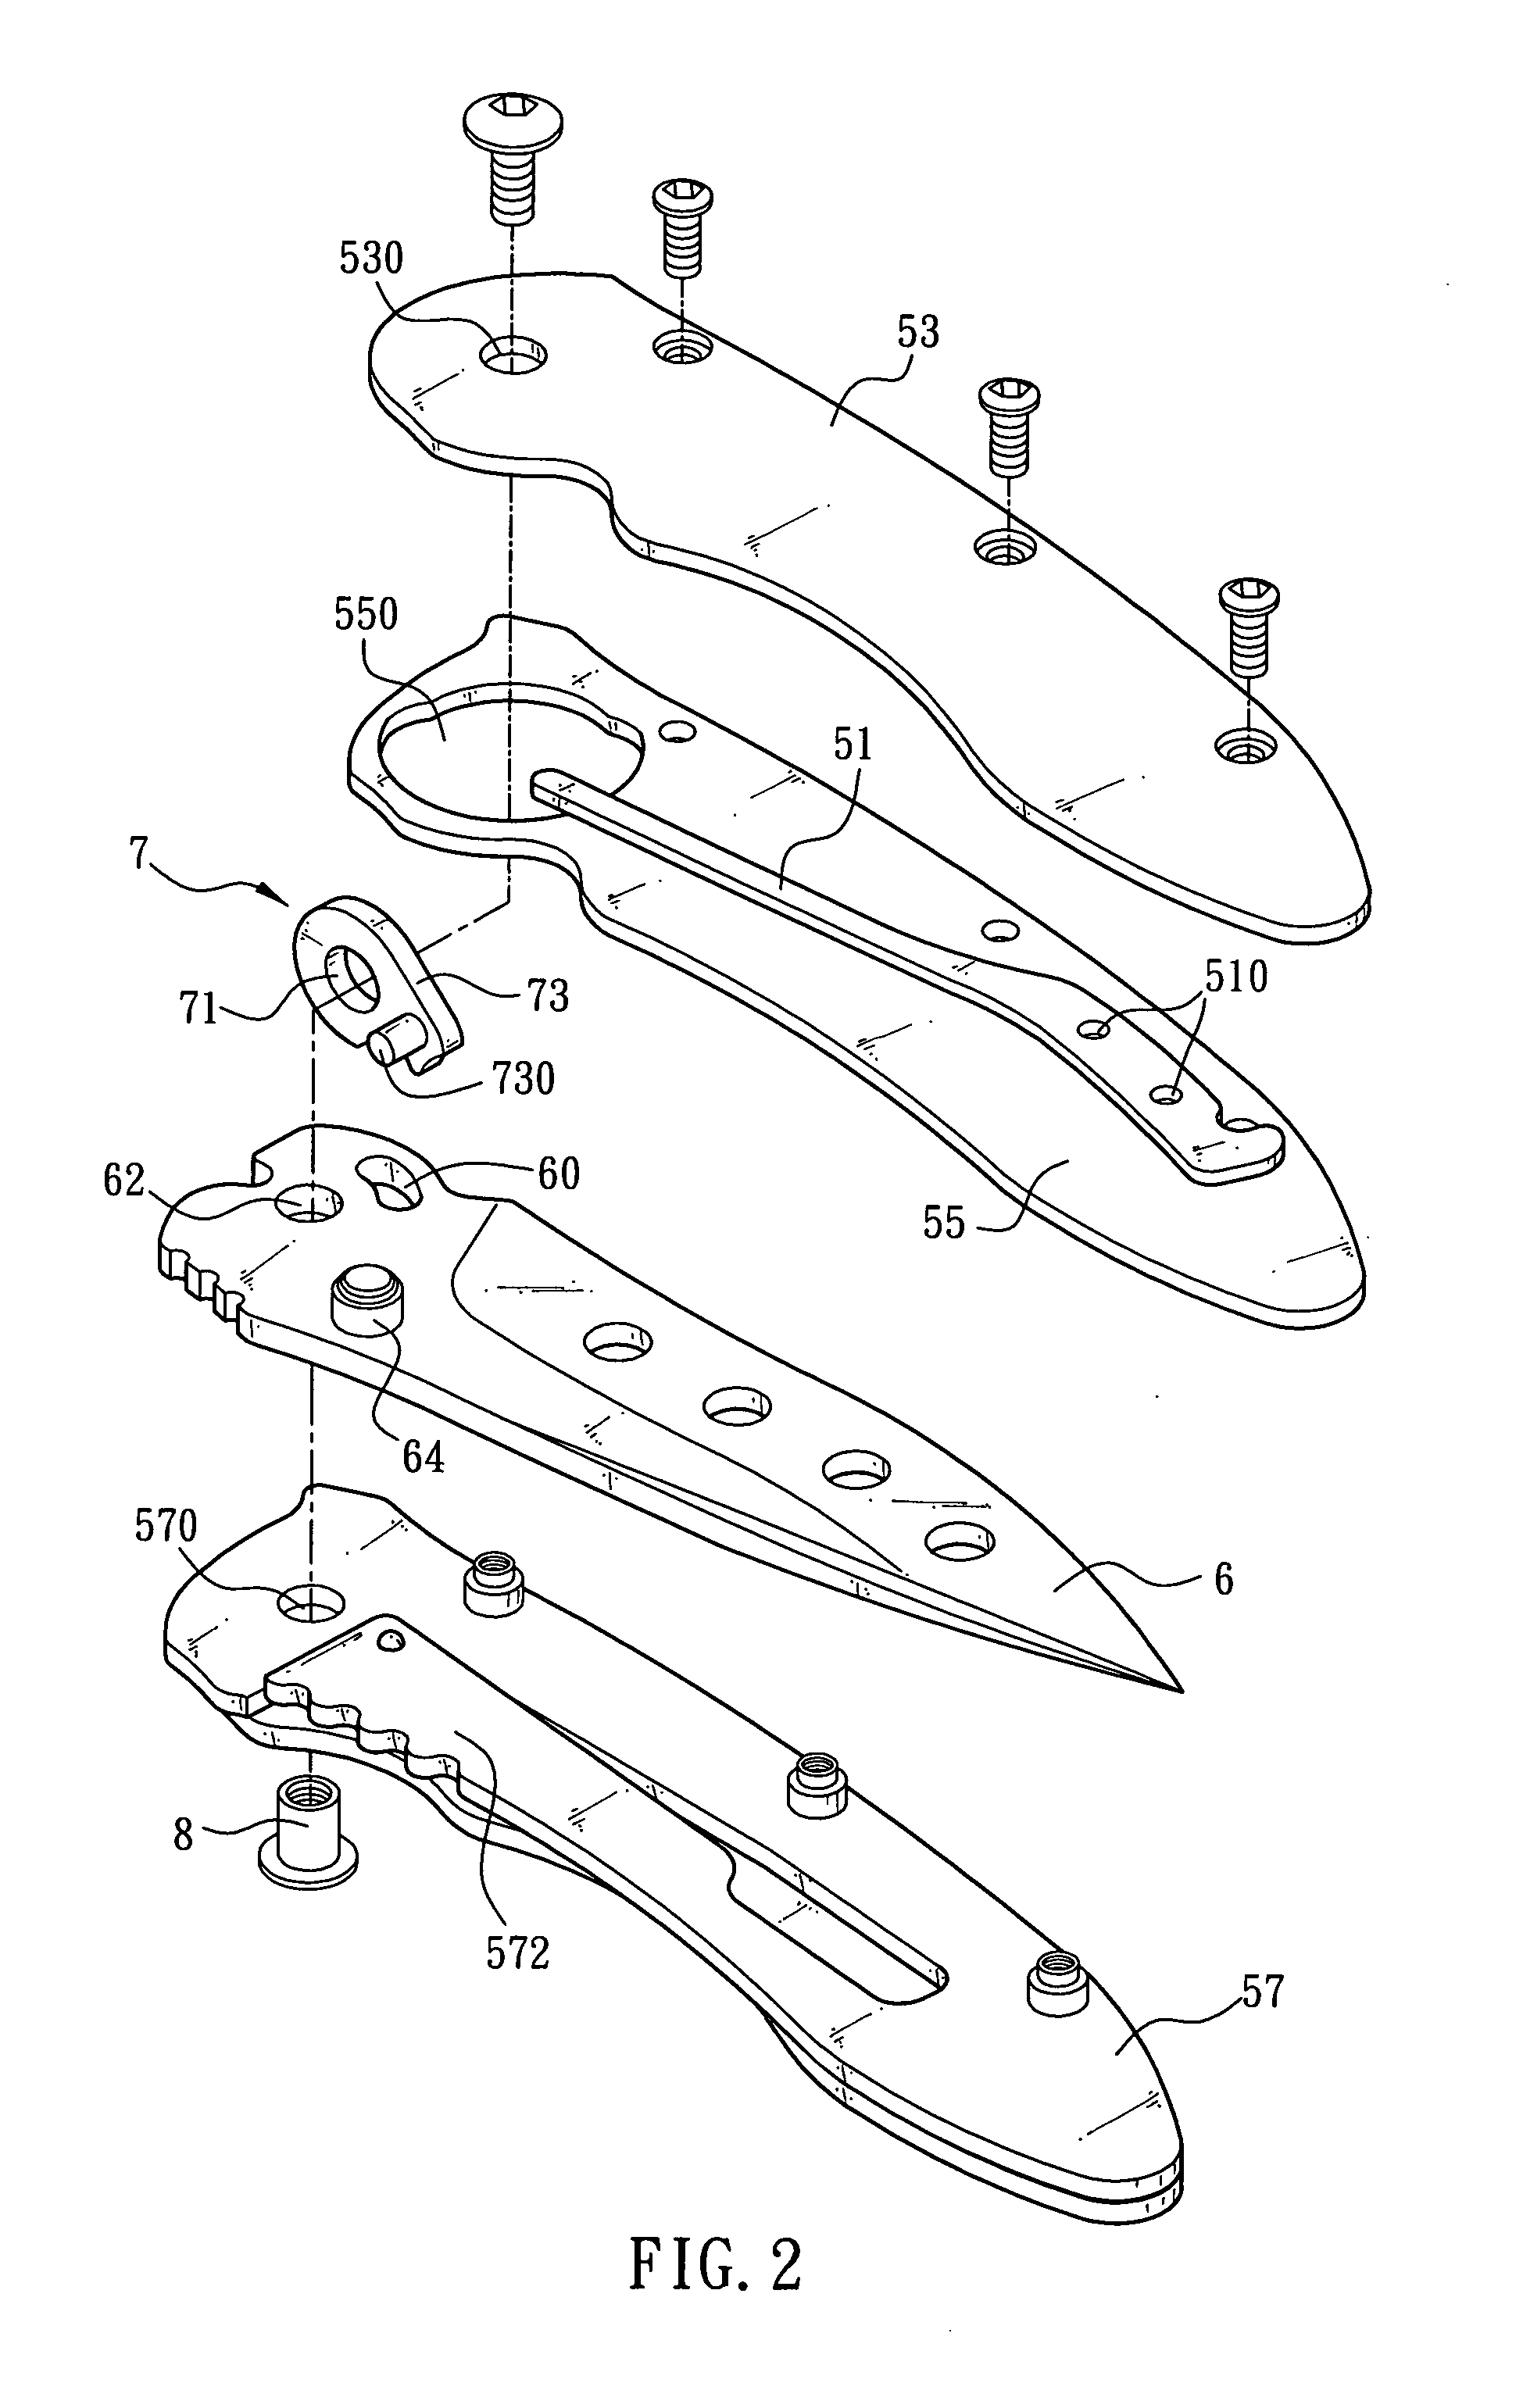 Folding knife assembly